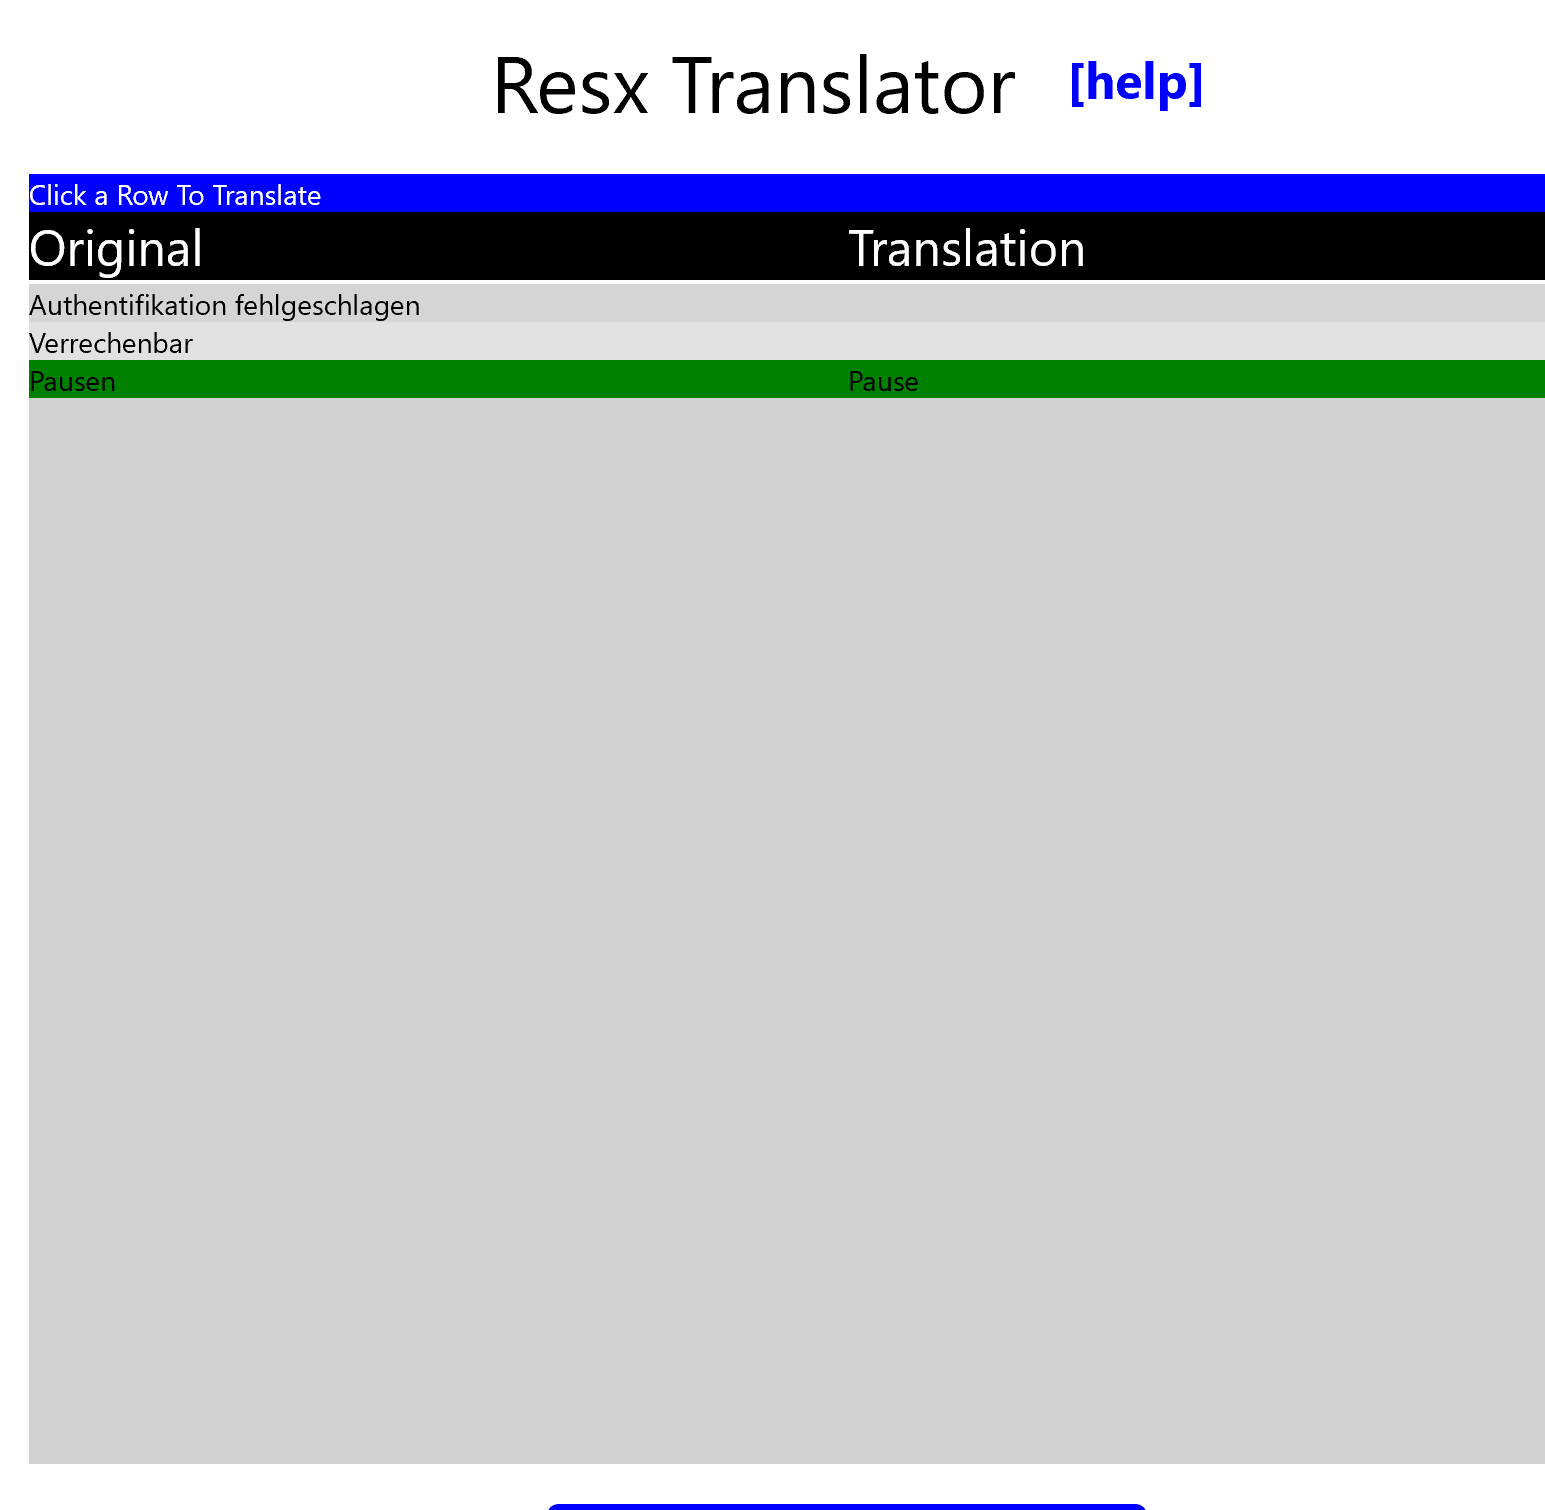 Resx Translator